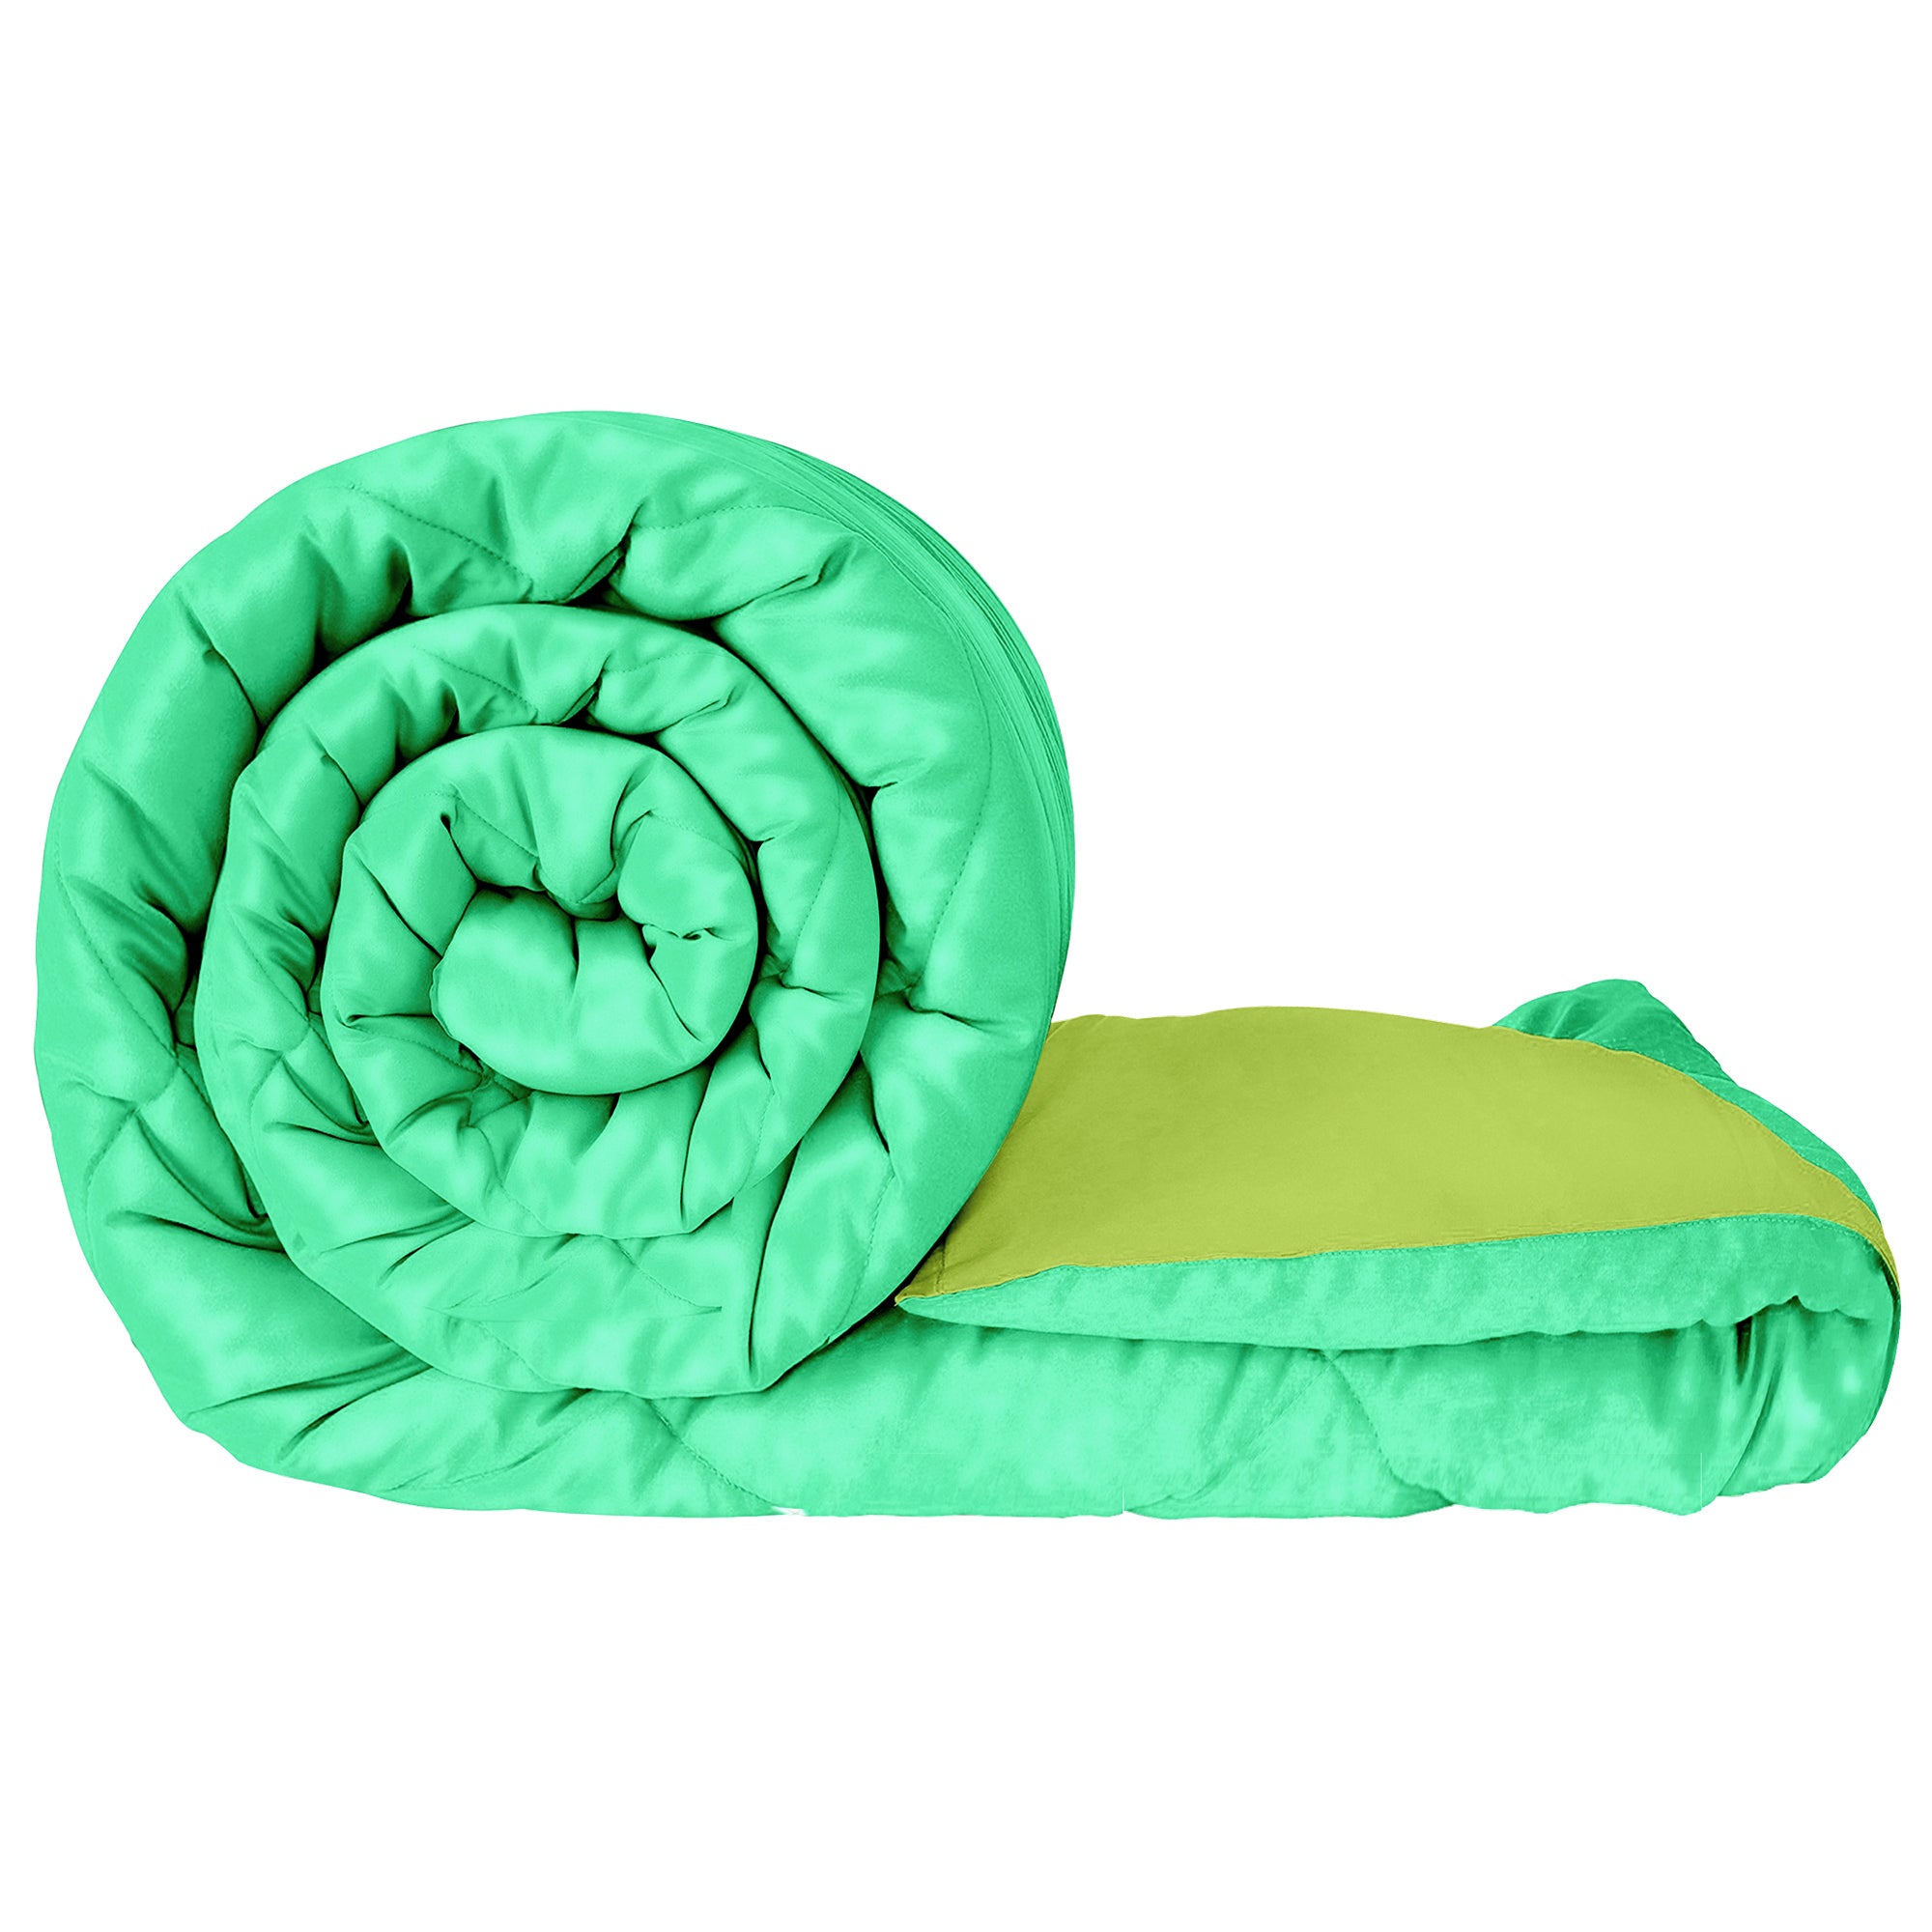 Fusion Soft Dual Color Comforter Double King Size - 230 cm X 250 CM